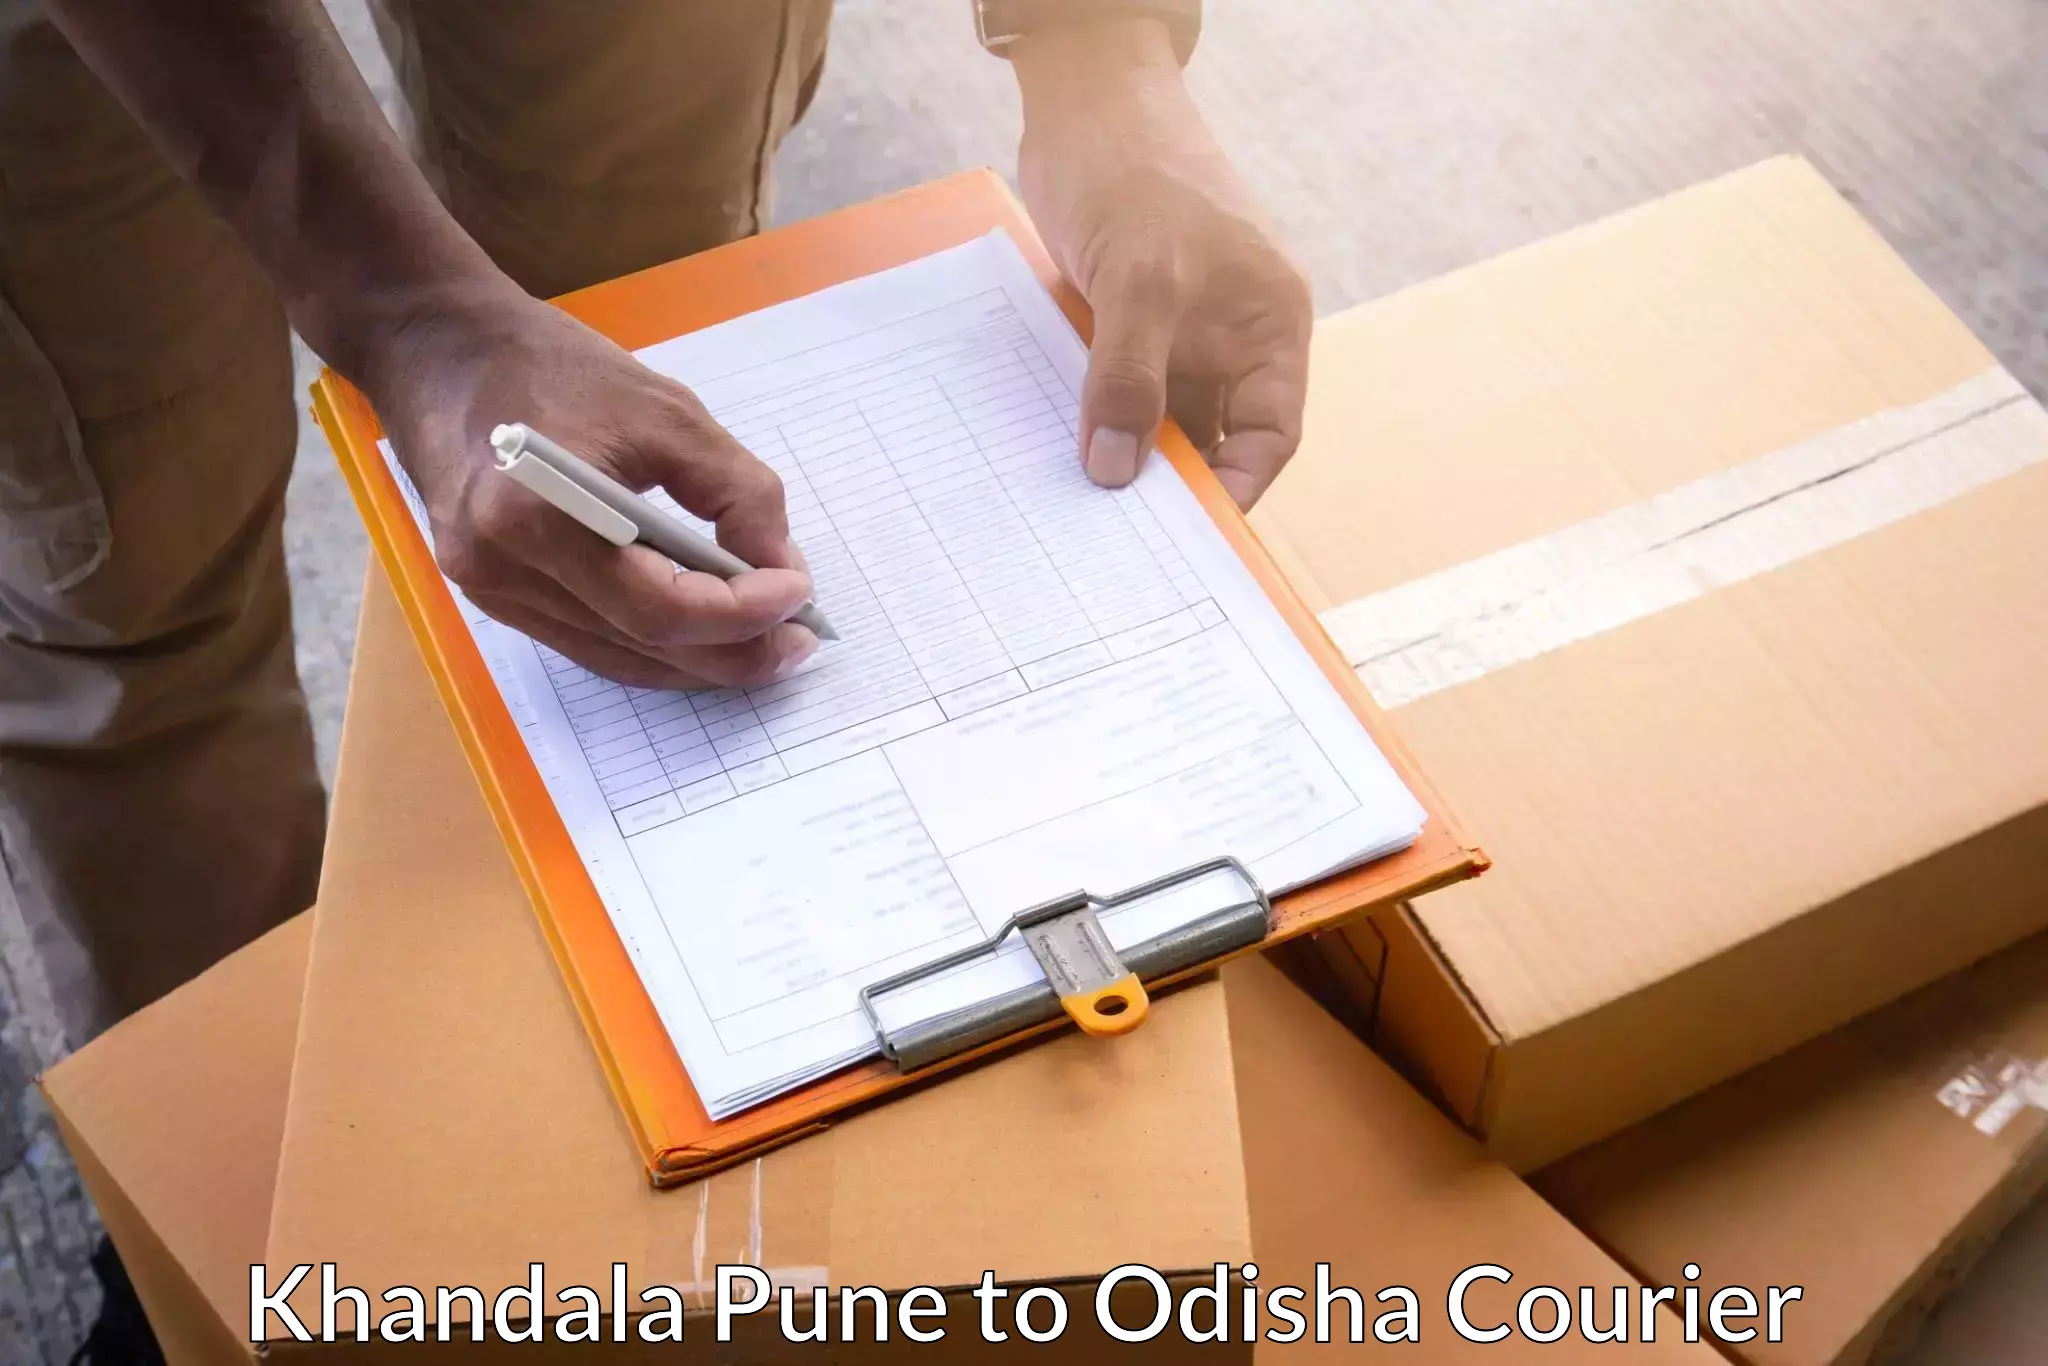 Reliable logistics providers Khandala Pune to Ukhunda